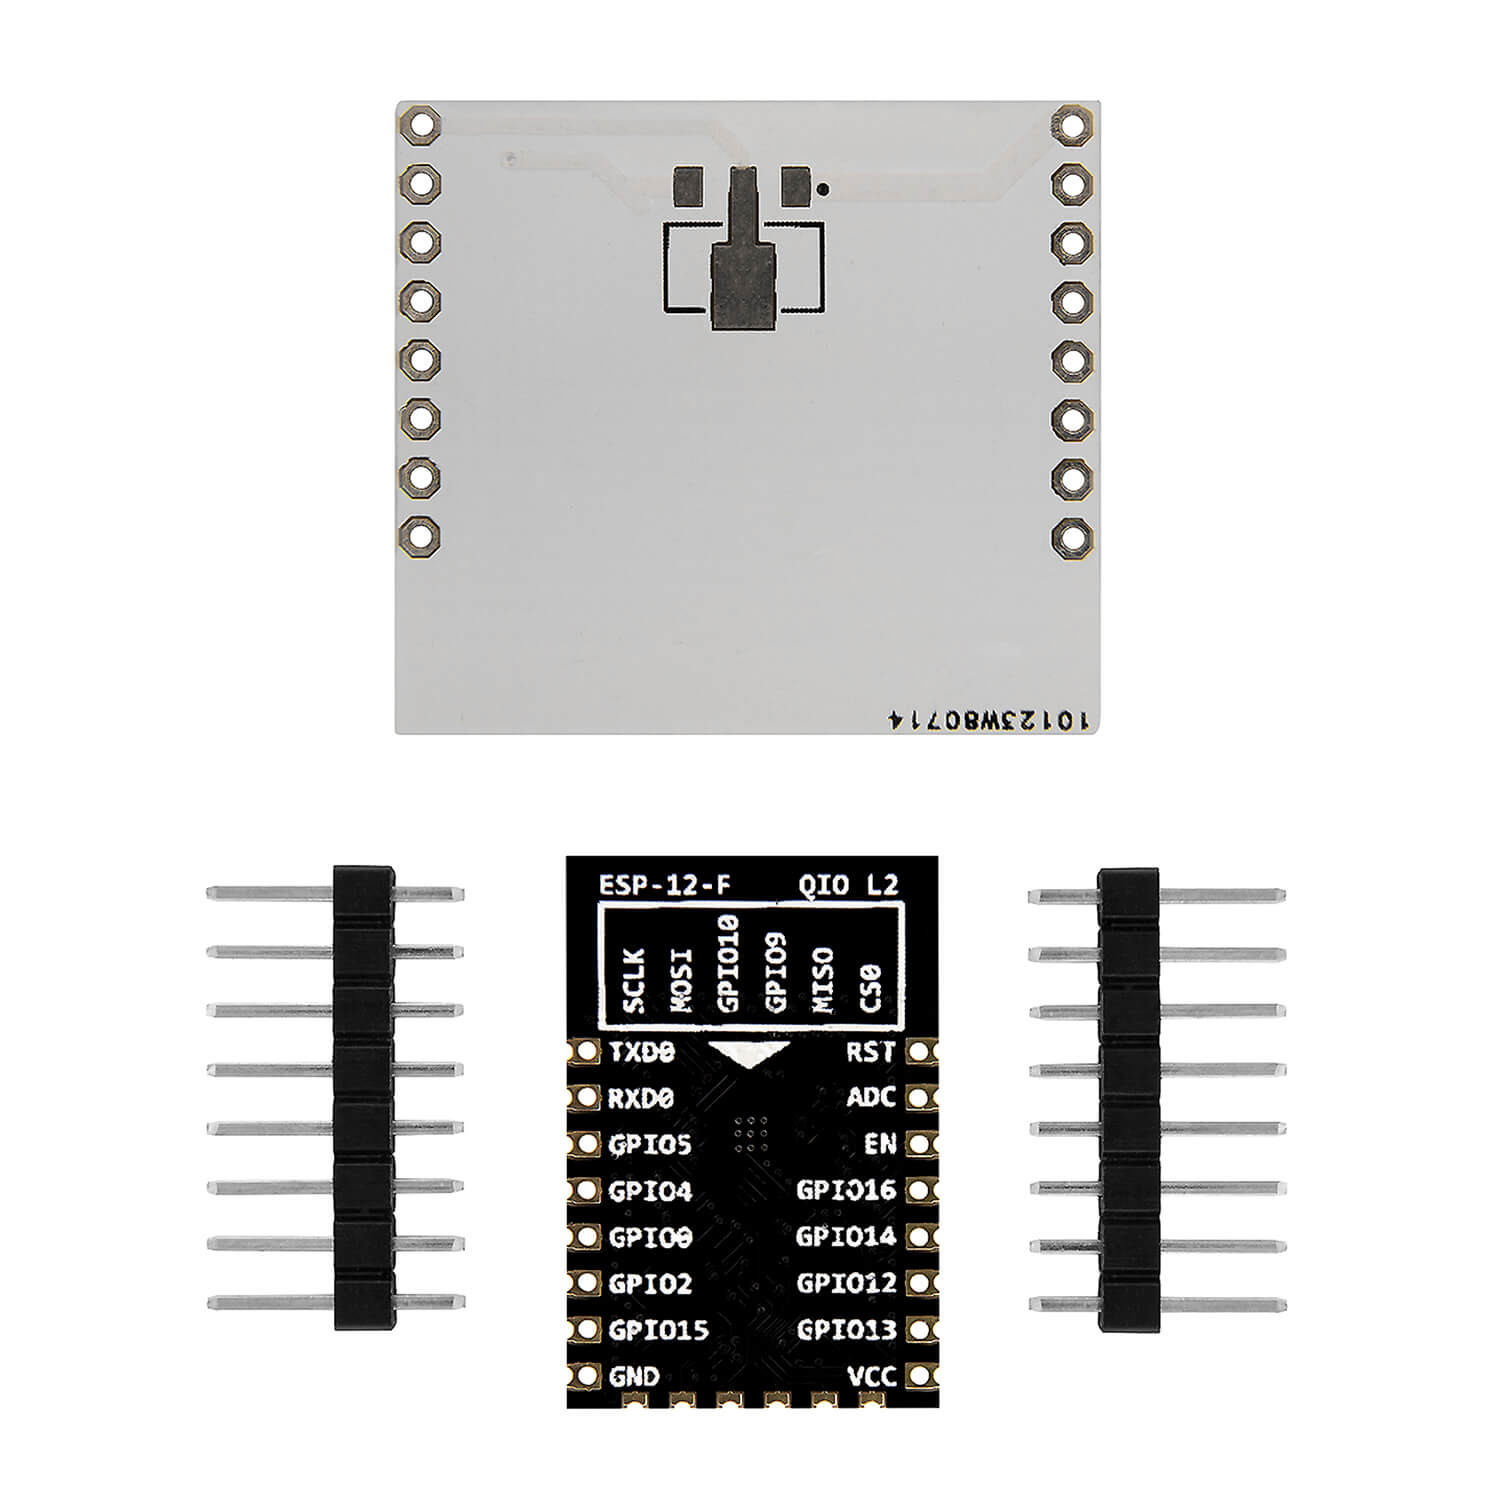 ESP8266 ESP-12F verbesserte Version zu ESP-12E, Wireless remote serielles WLAN WIFI Modul für Raspberry Pi und Mikrocontroller mit gratis Adapter Board! - AZ-Delivery